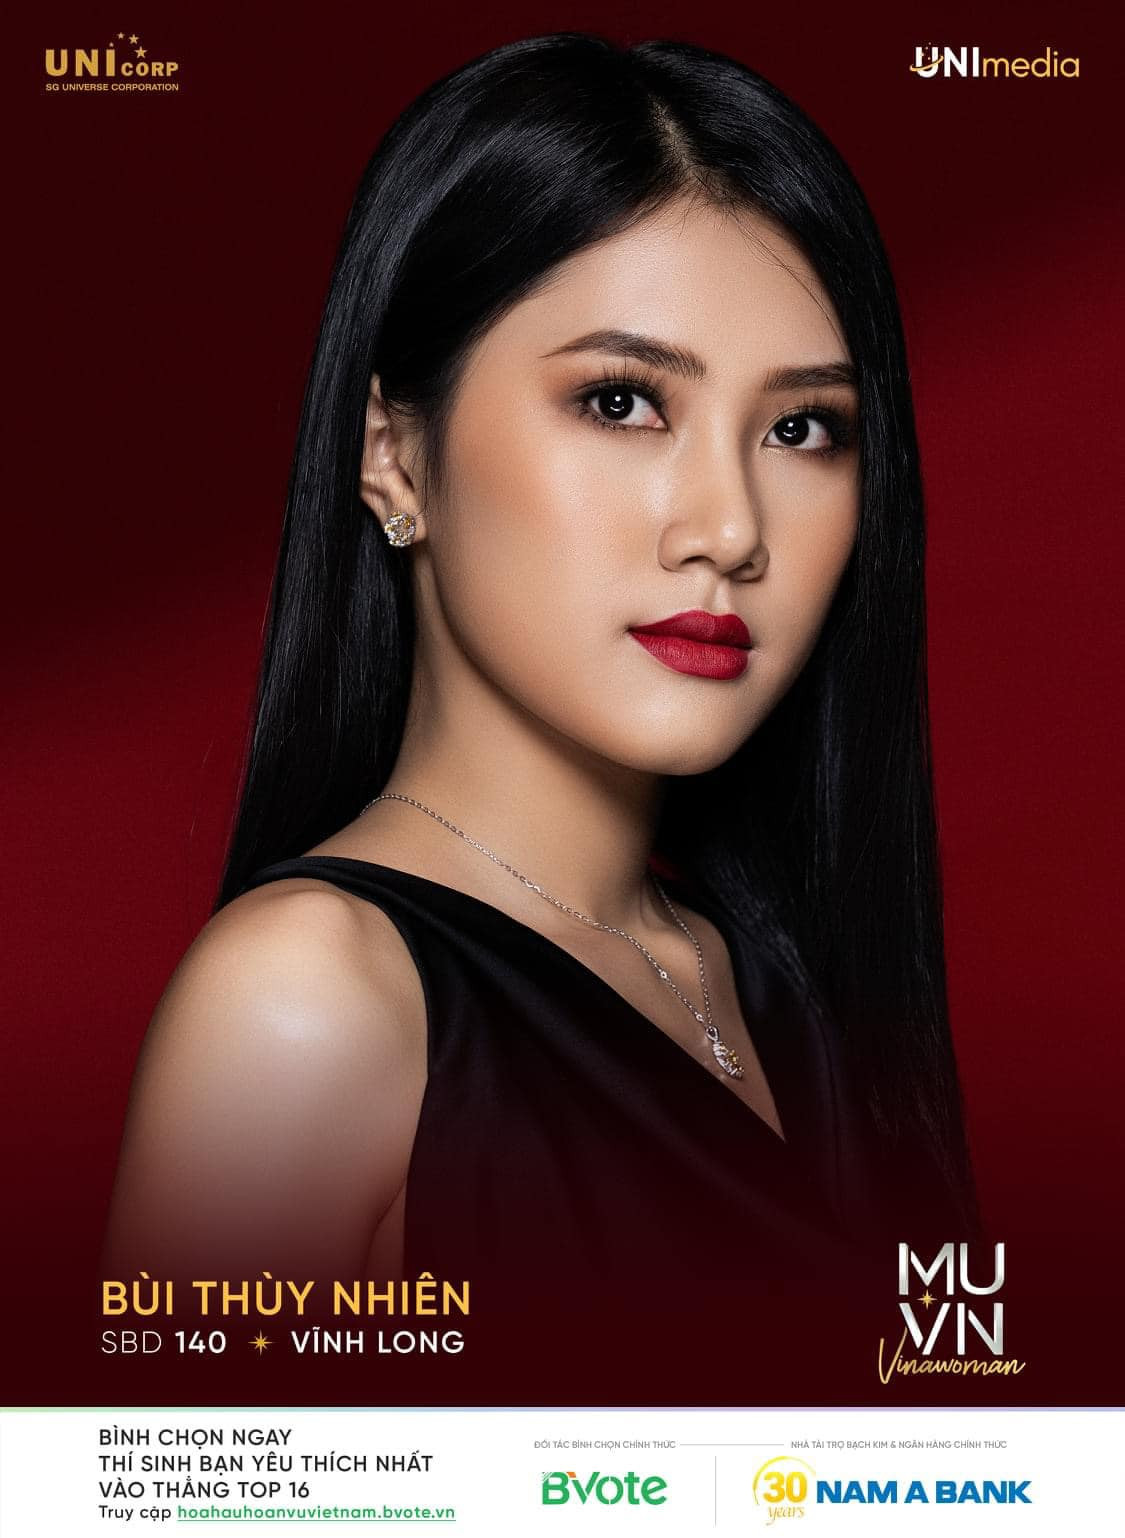 Nguyễn Thị Ngọc Châu - SBD 314 vence miss universe vietnam 2022. - Página 4 VWdFjf